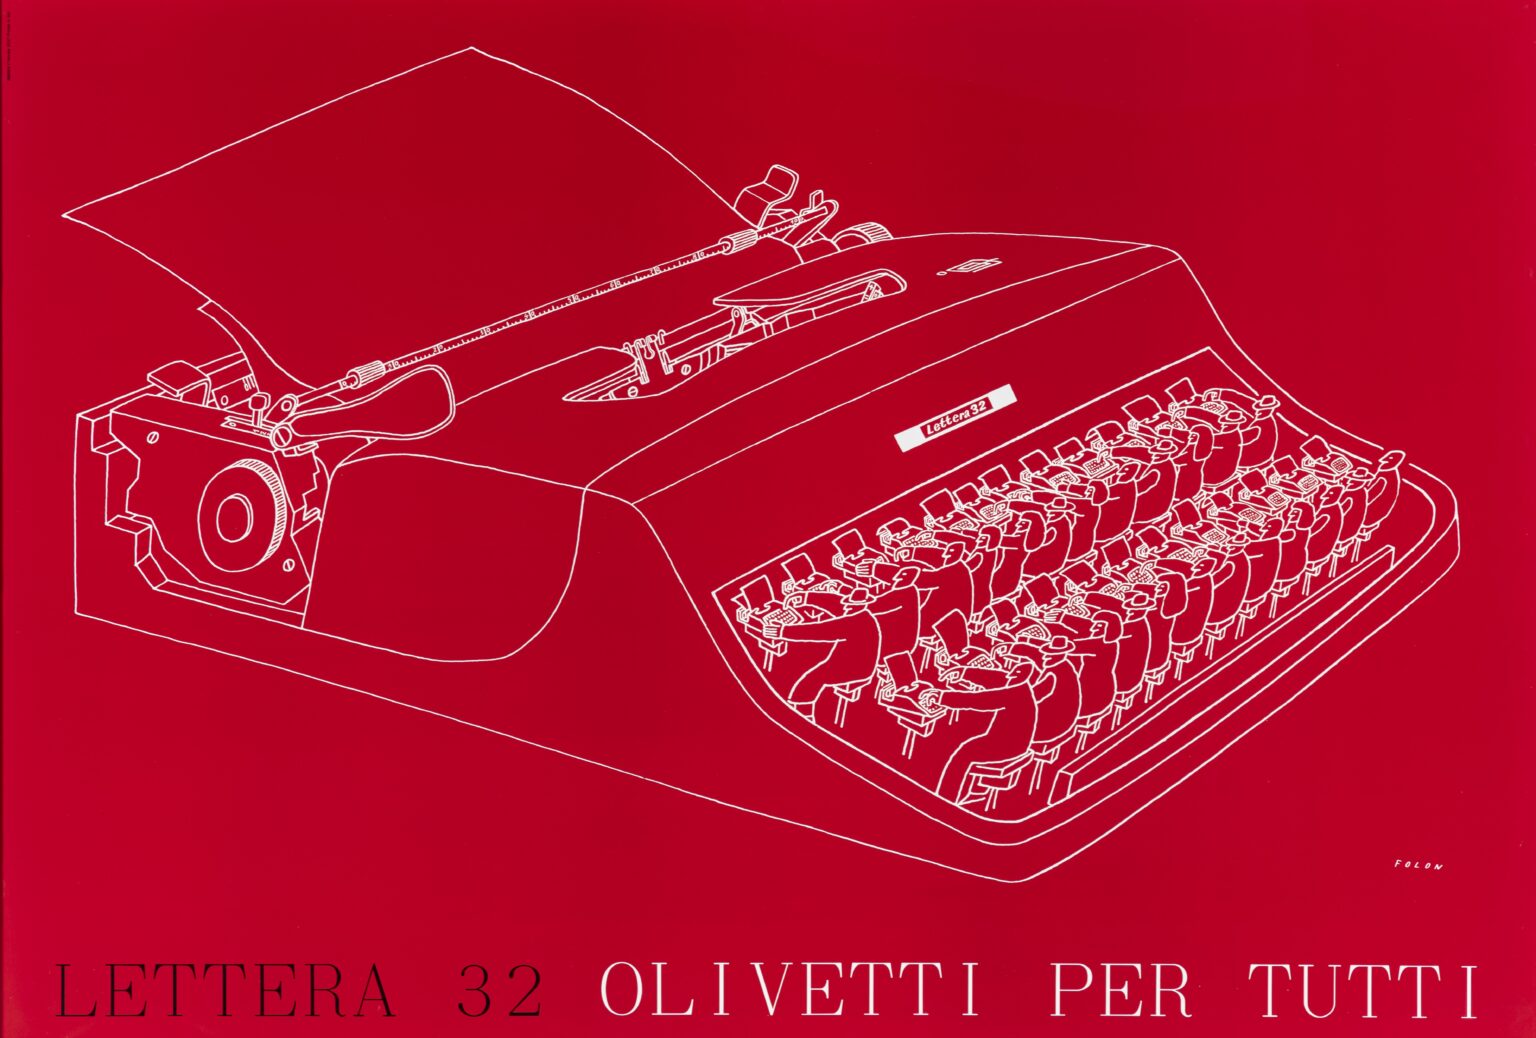 Olivetti jpeg